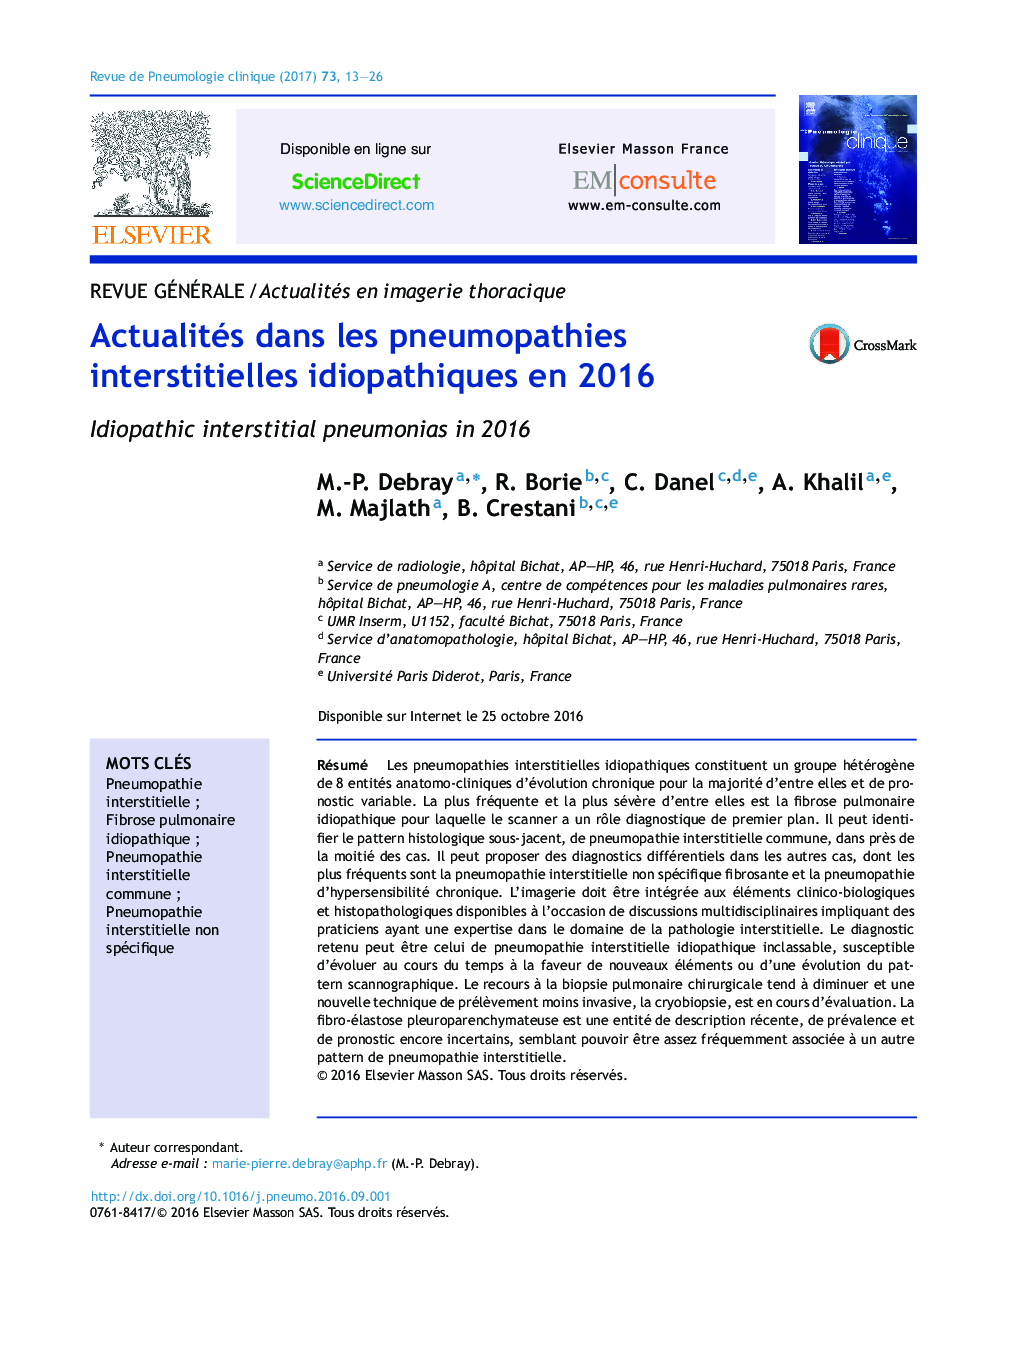 Actualités dans les pneumopathies interstitielles idiopathiques en 2016